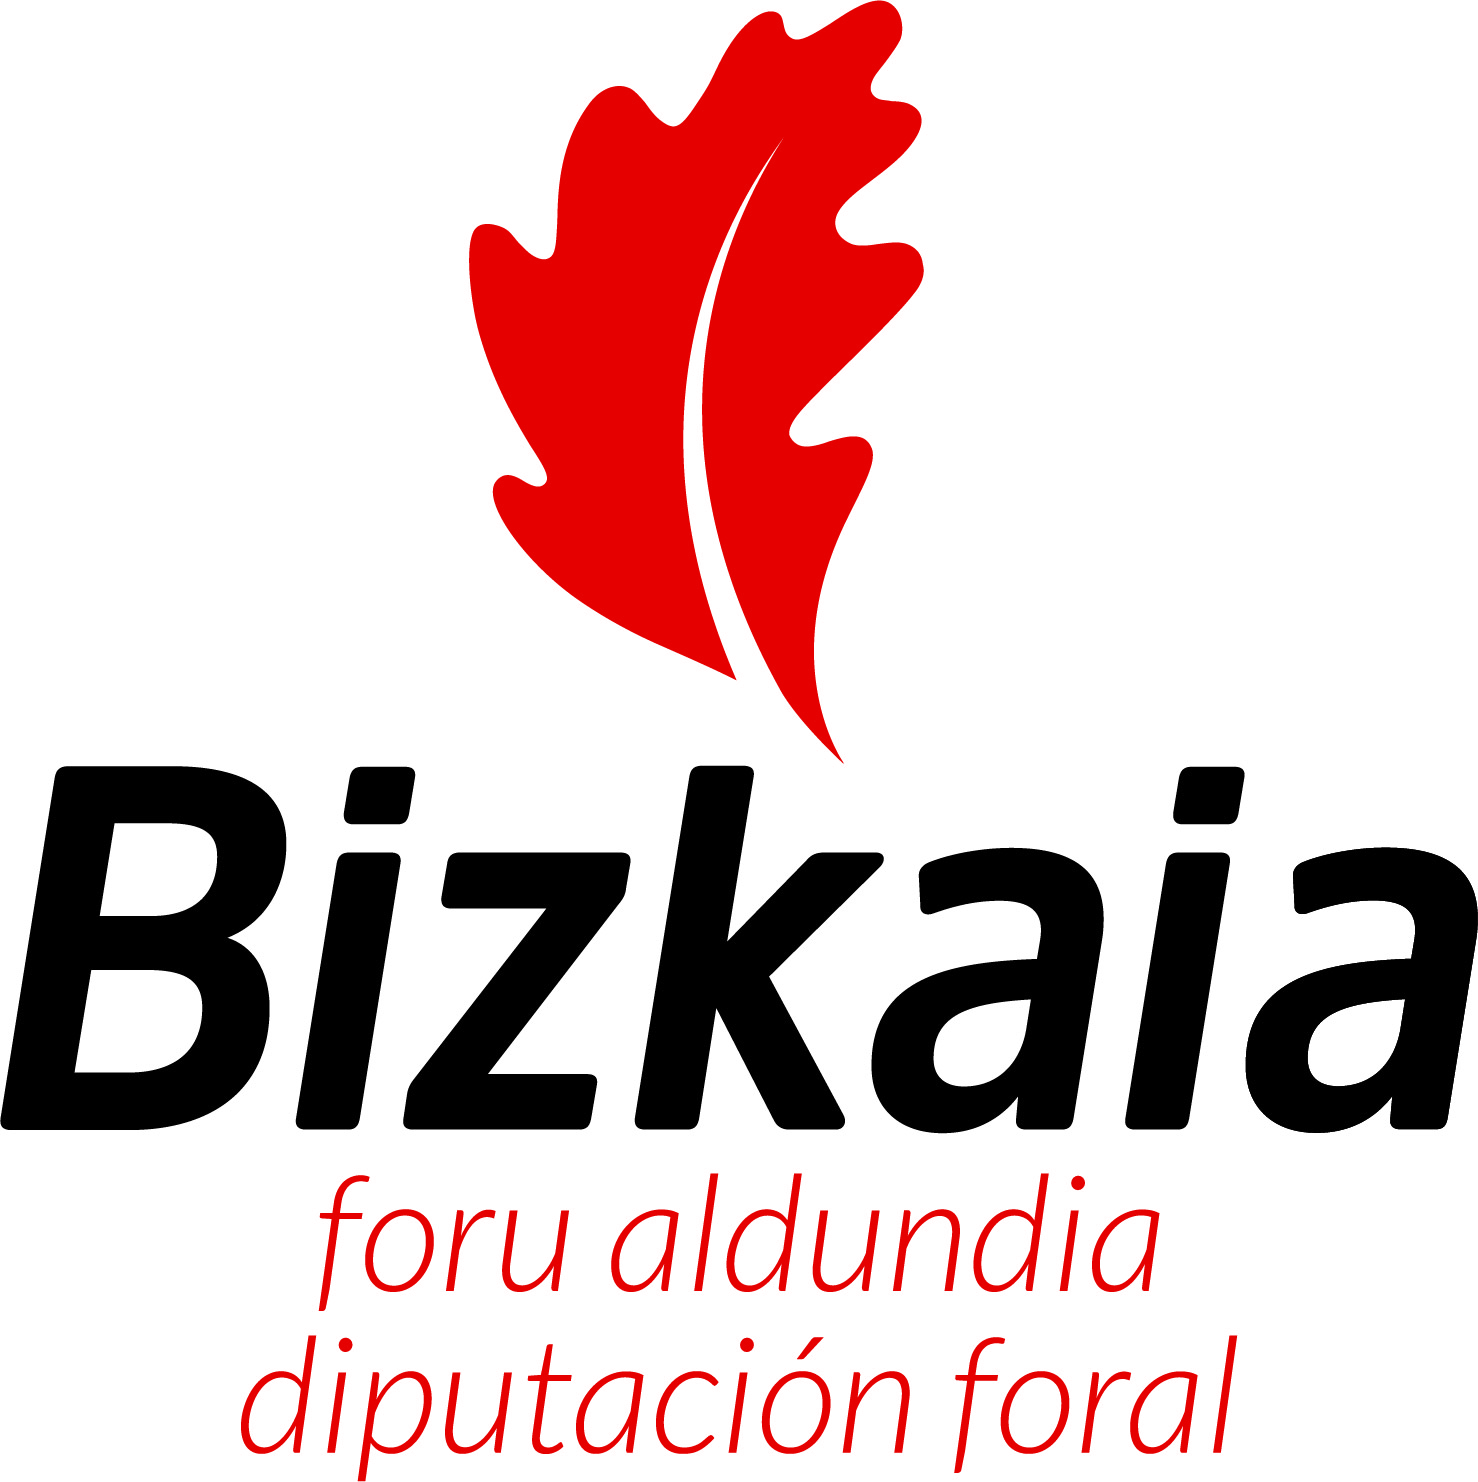 DIPUTACION FORAL DE BIZKAIA